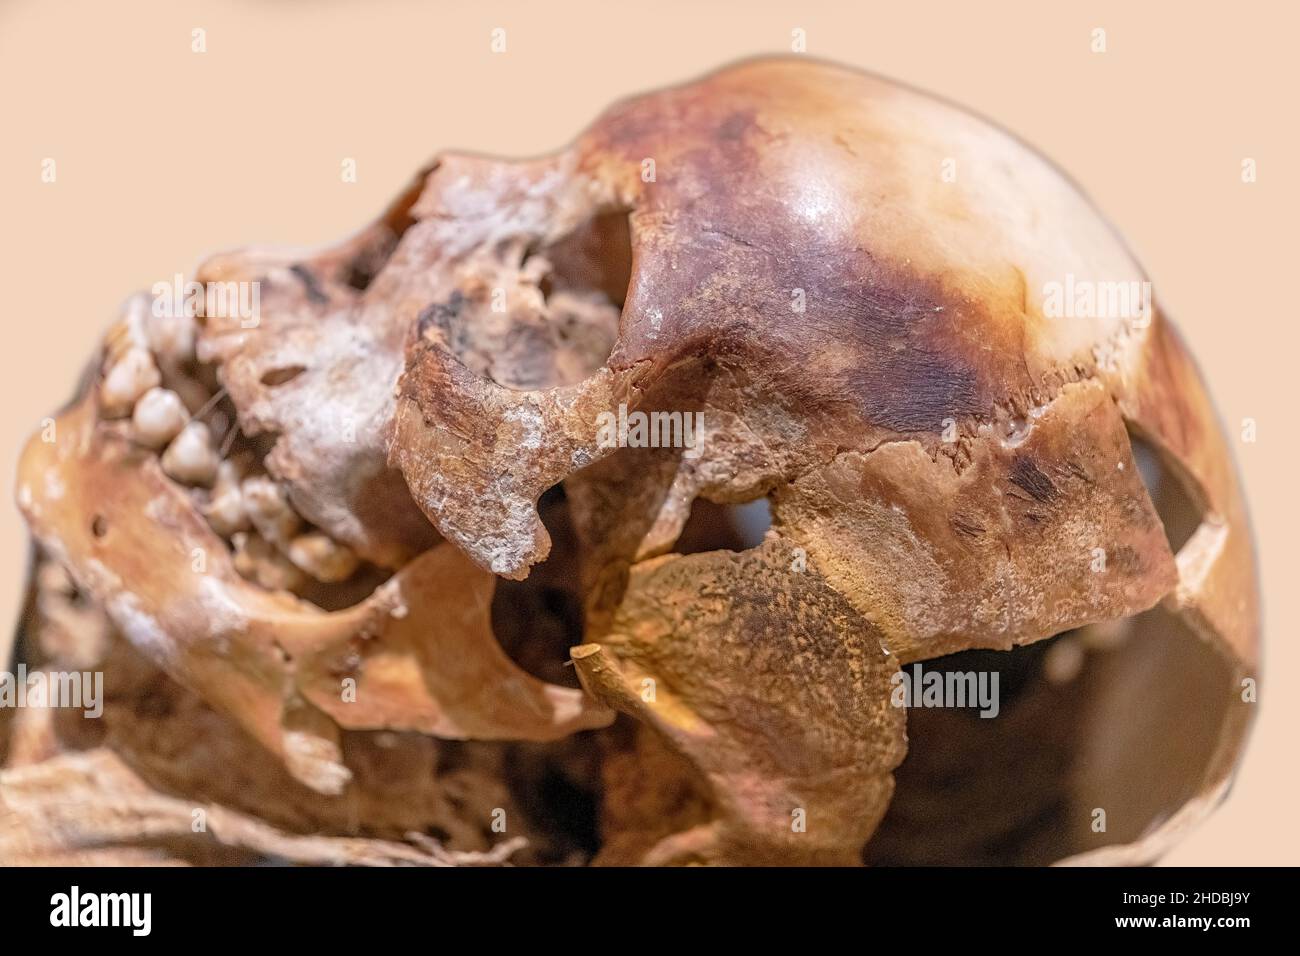 Crâne de Nakht un jeune homme de travail de l'Égypte ancienne.Objets anciens de la culture égyptienne vus au Musée royal de l'Ontario (ROM) le 5 janvier 2022 Banque D'Images